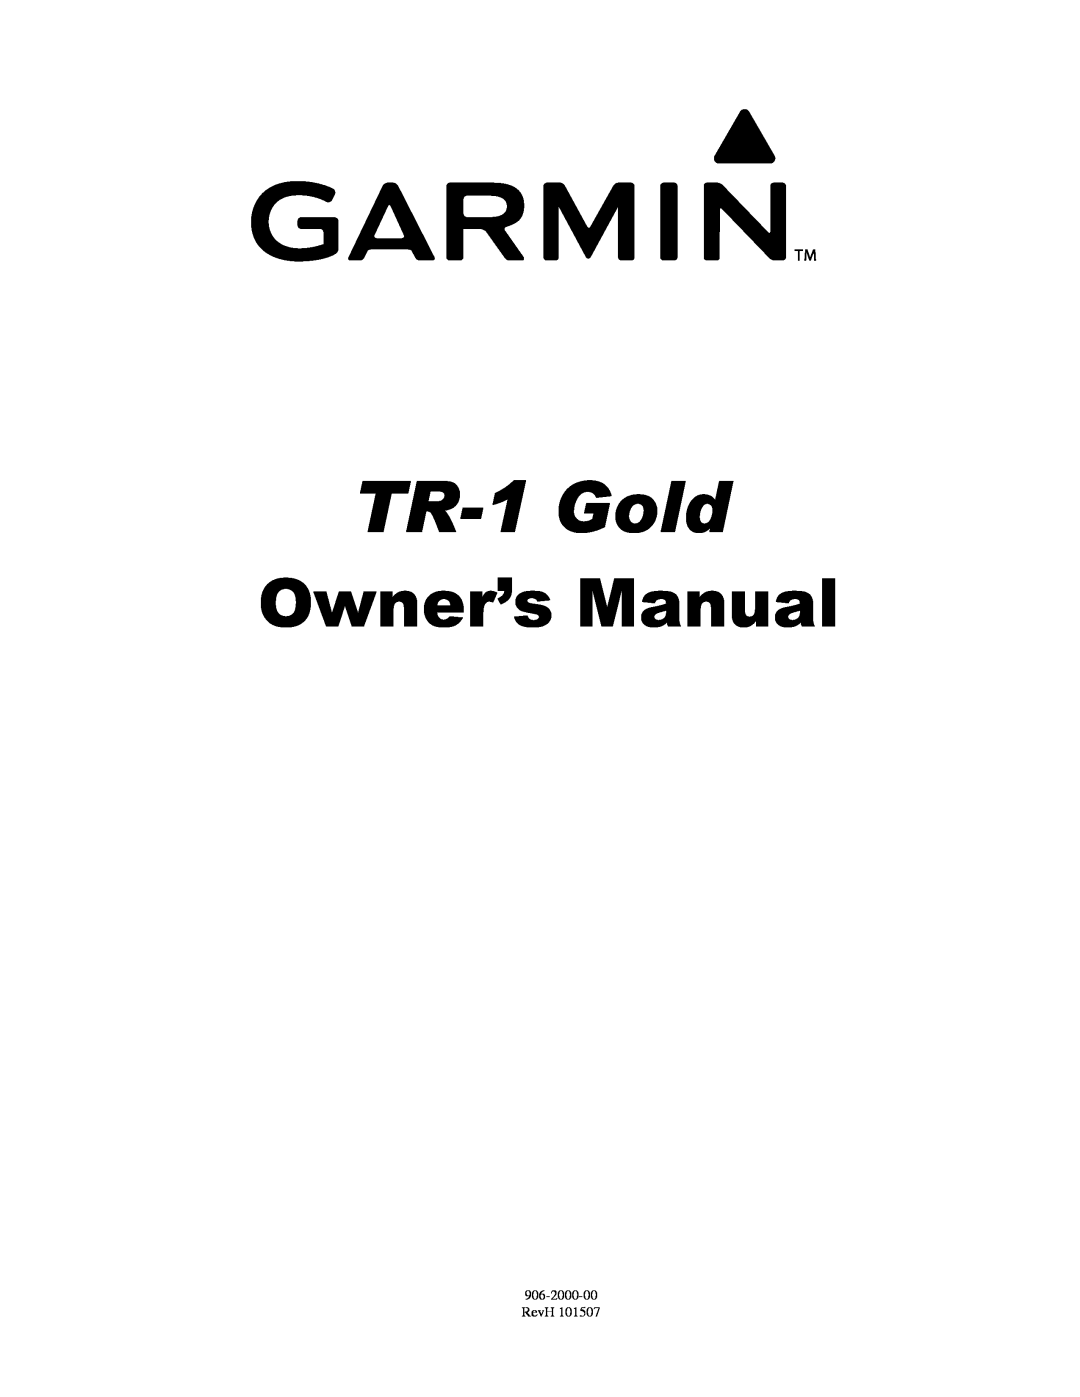 Garmin 906-2000-00 owner manual TR-1 Gold, Owner’s Manual, RevH 